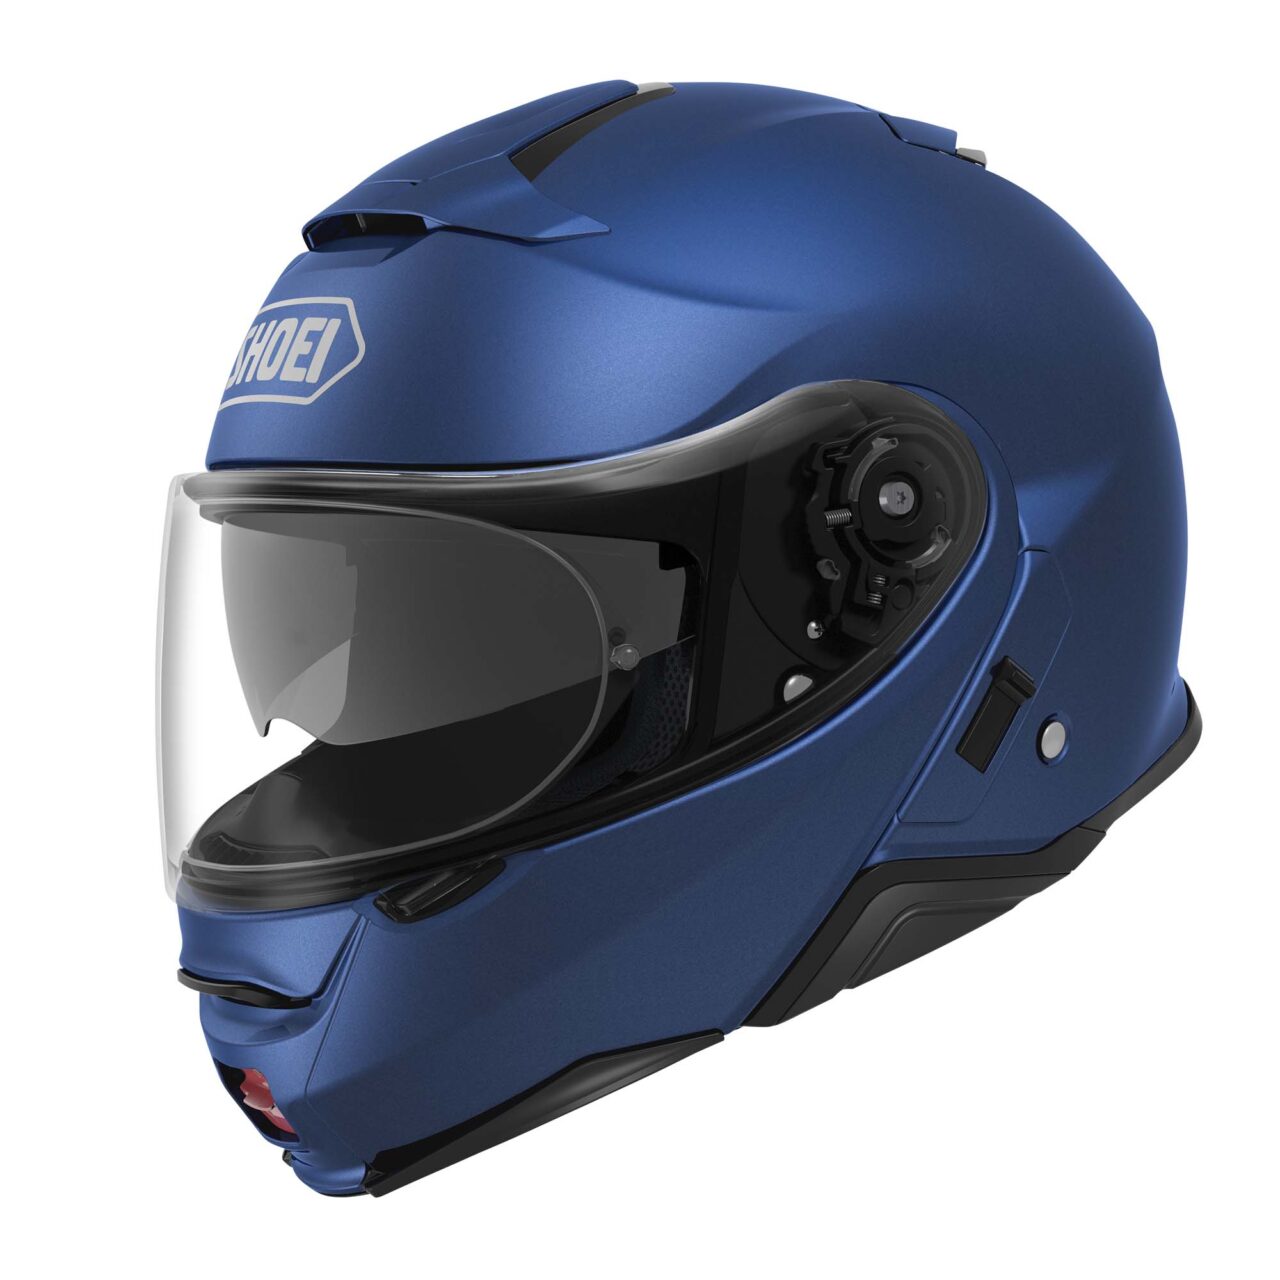 SHOEI Neotec II Helmet - Matte Blue Metallic